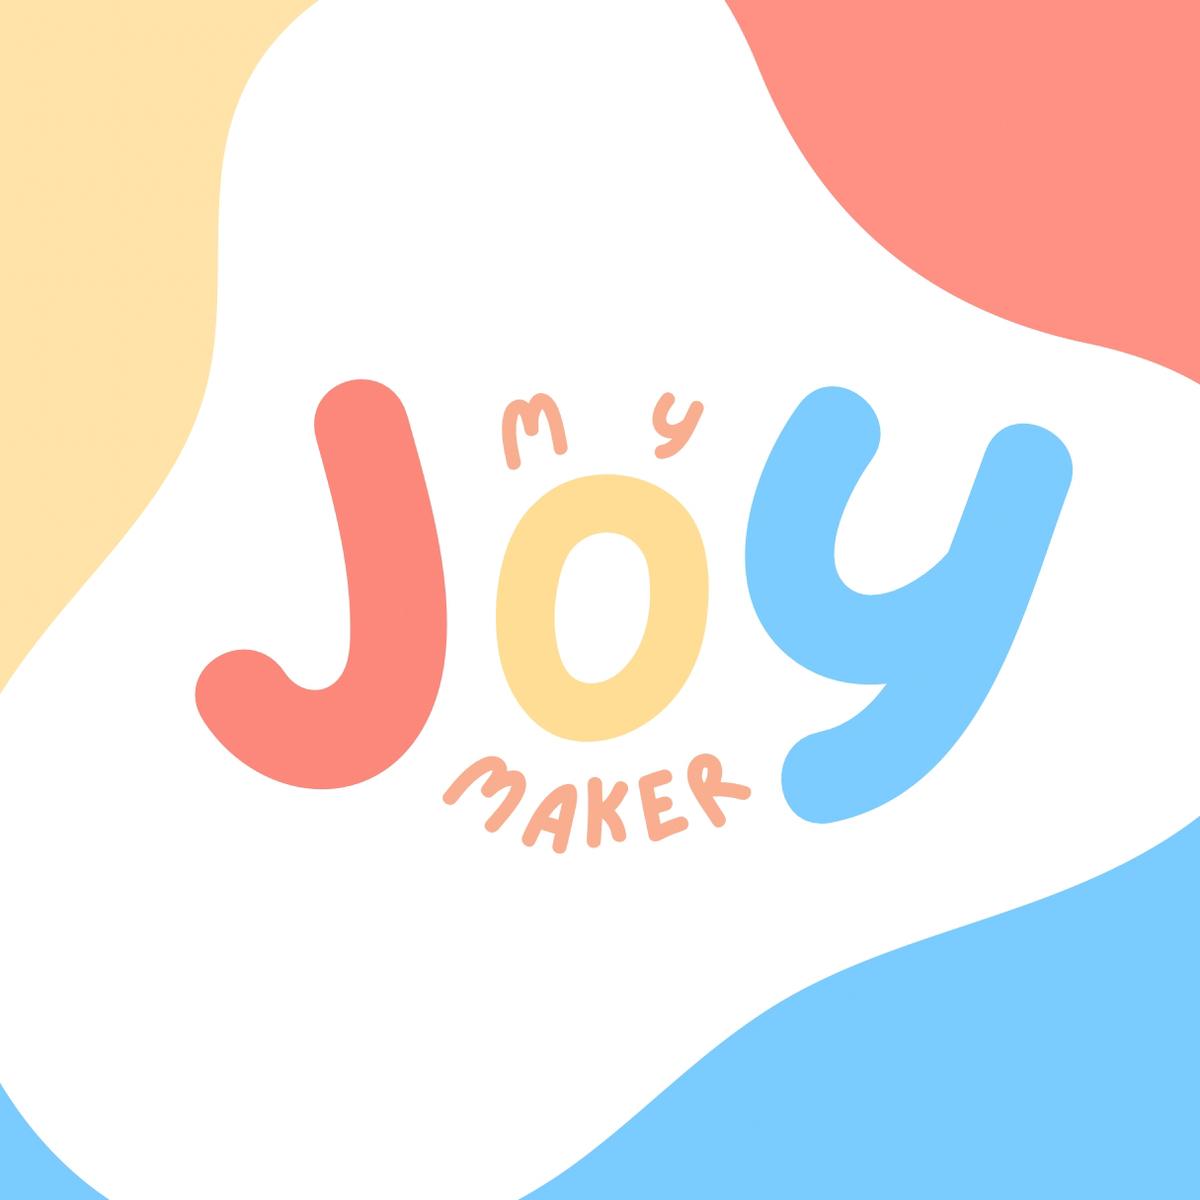 My Joy Maker's images